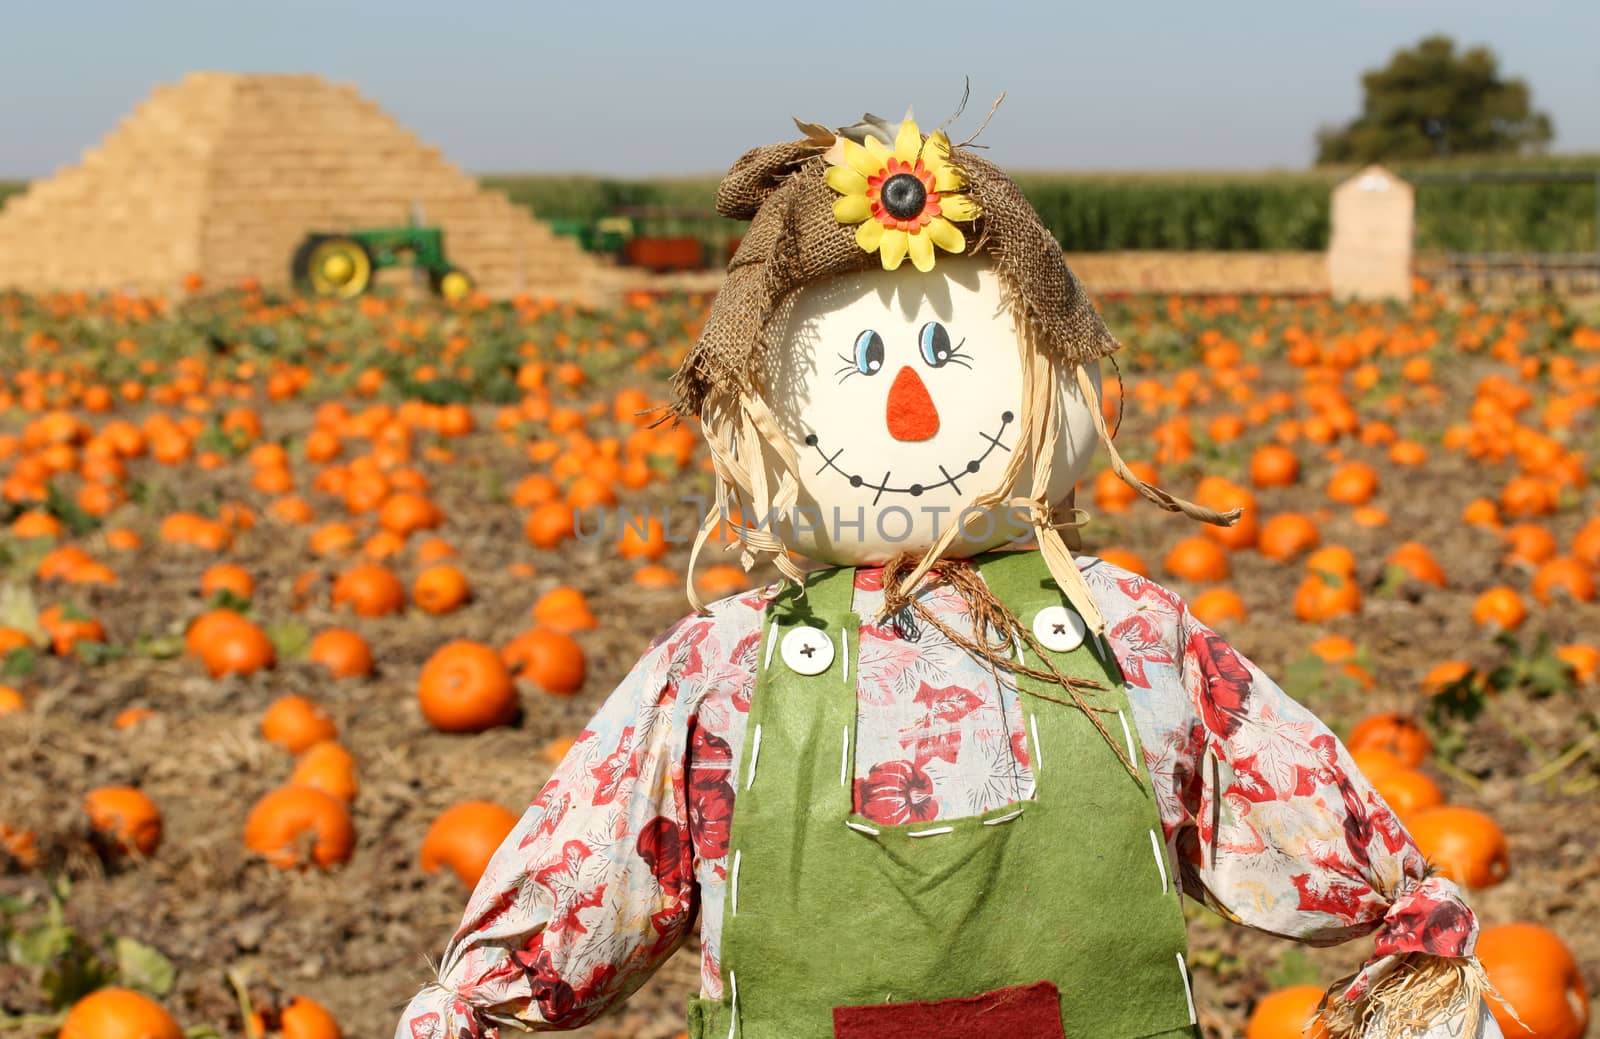 Scarecrow in autumn pumpkin field